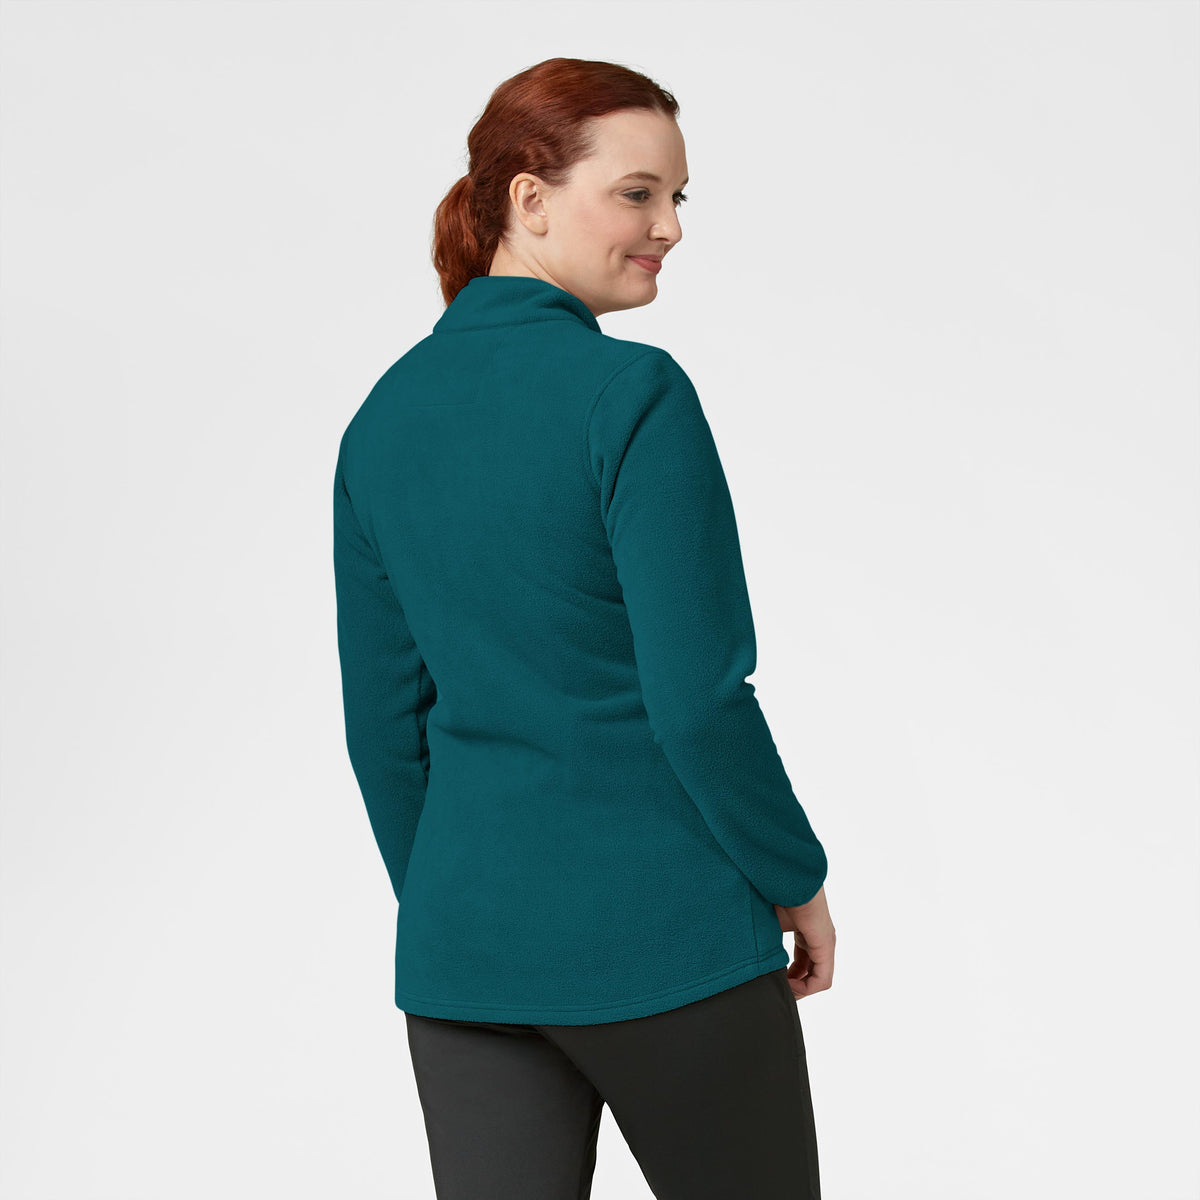 Slate Women's Micro Fleece Zip Jacket Caribbean Blue back view